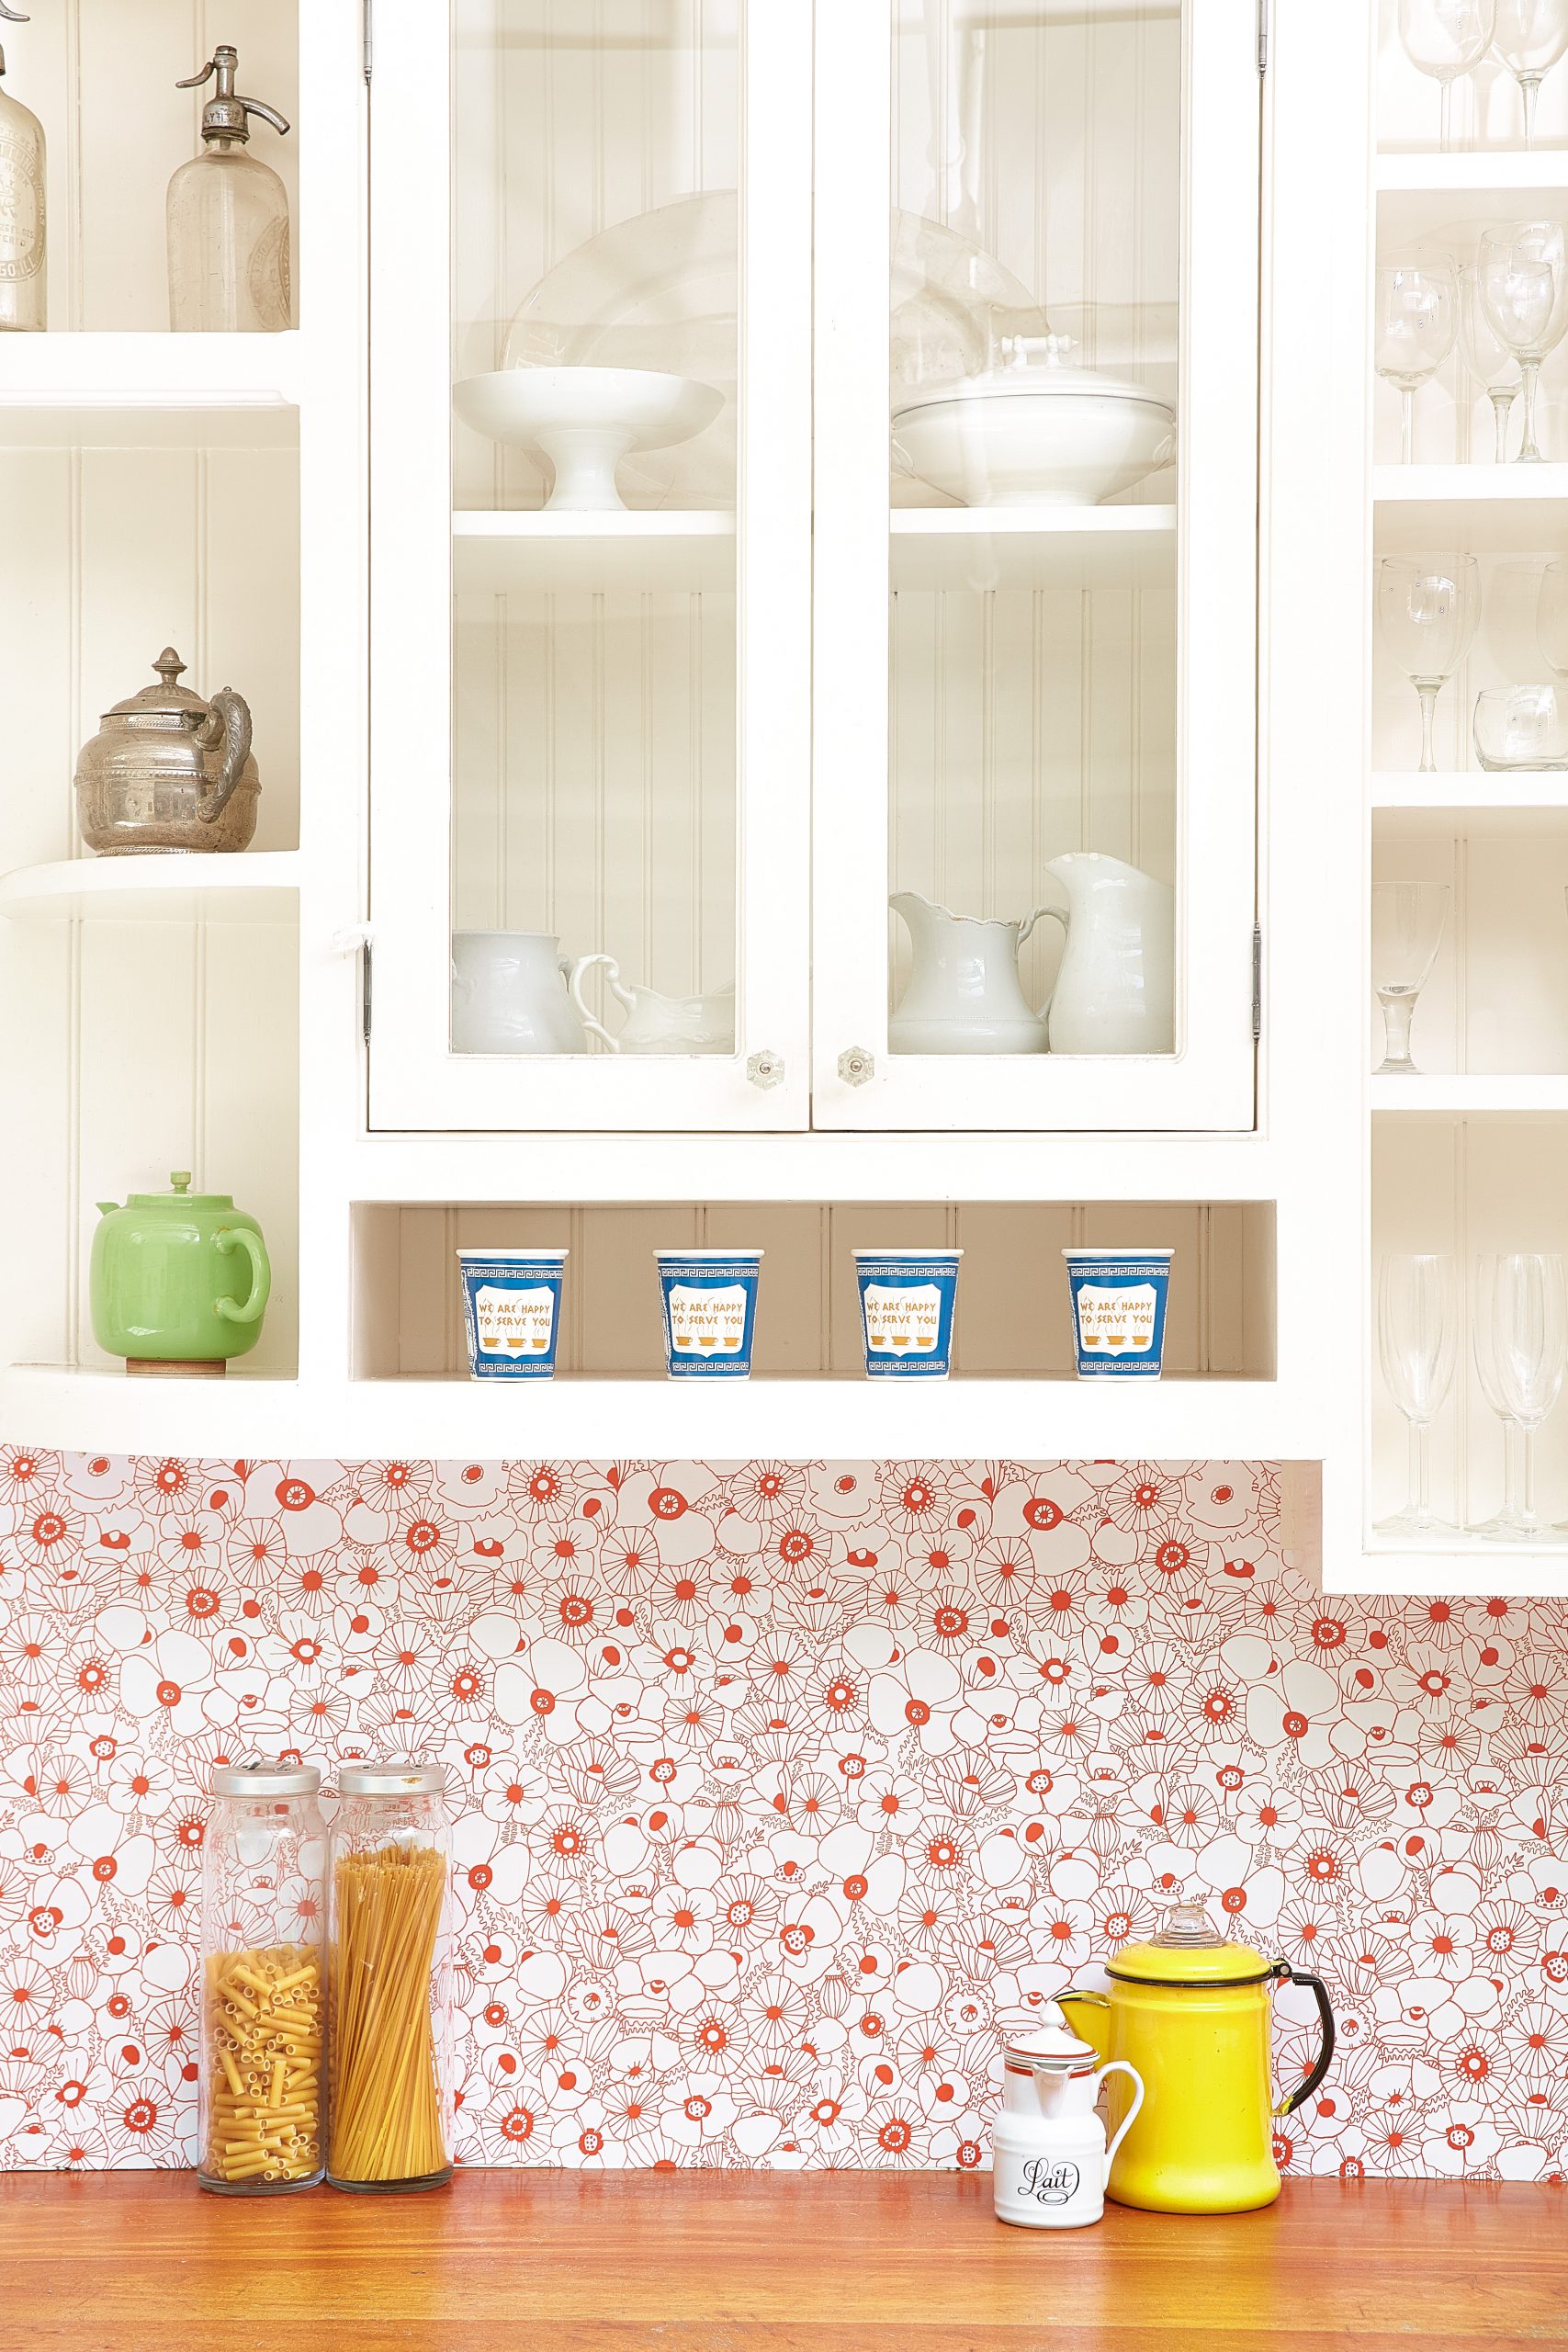 Floral wallpapered kitchen backsplash